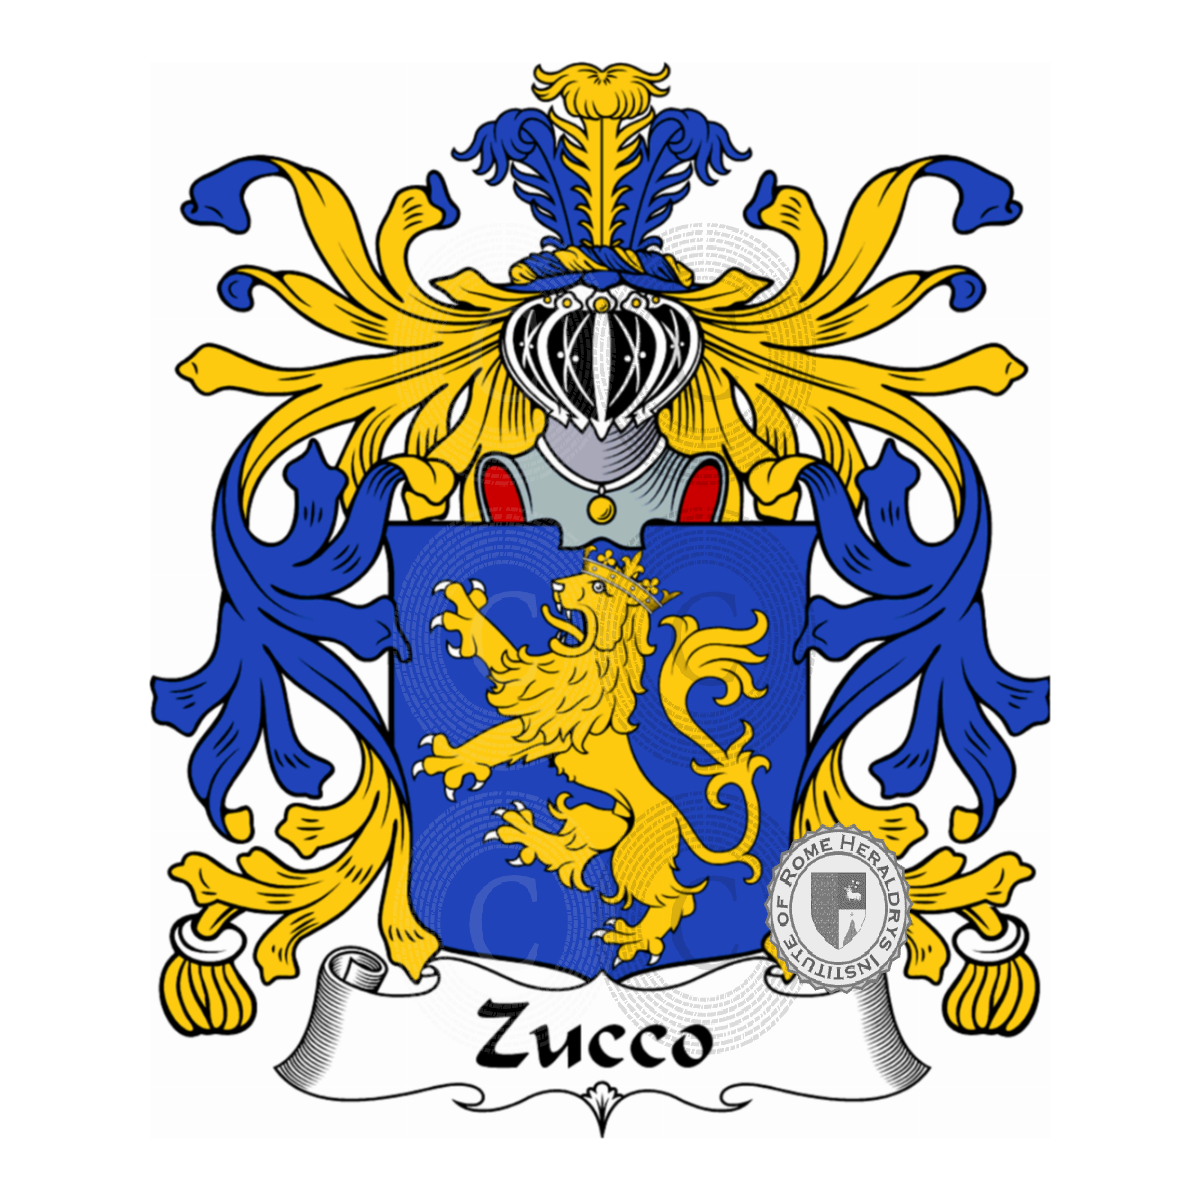 Escudo de la familiaZucco, Zucca,Zucco Cuccagna,Zucco di Cuccagna